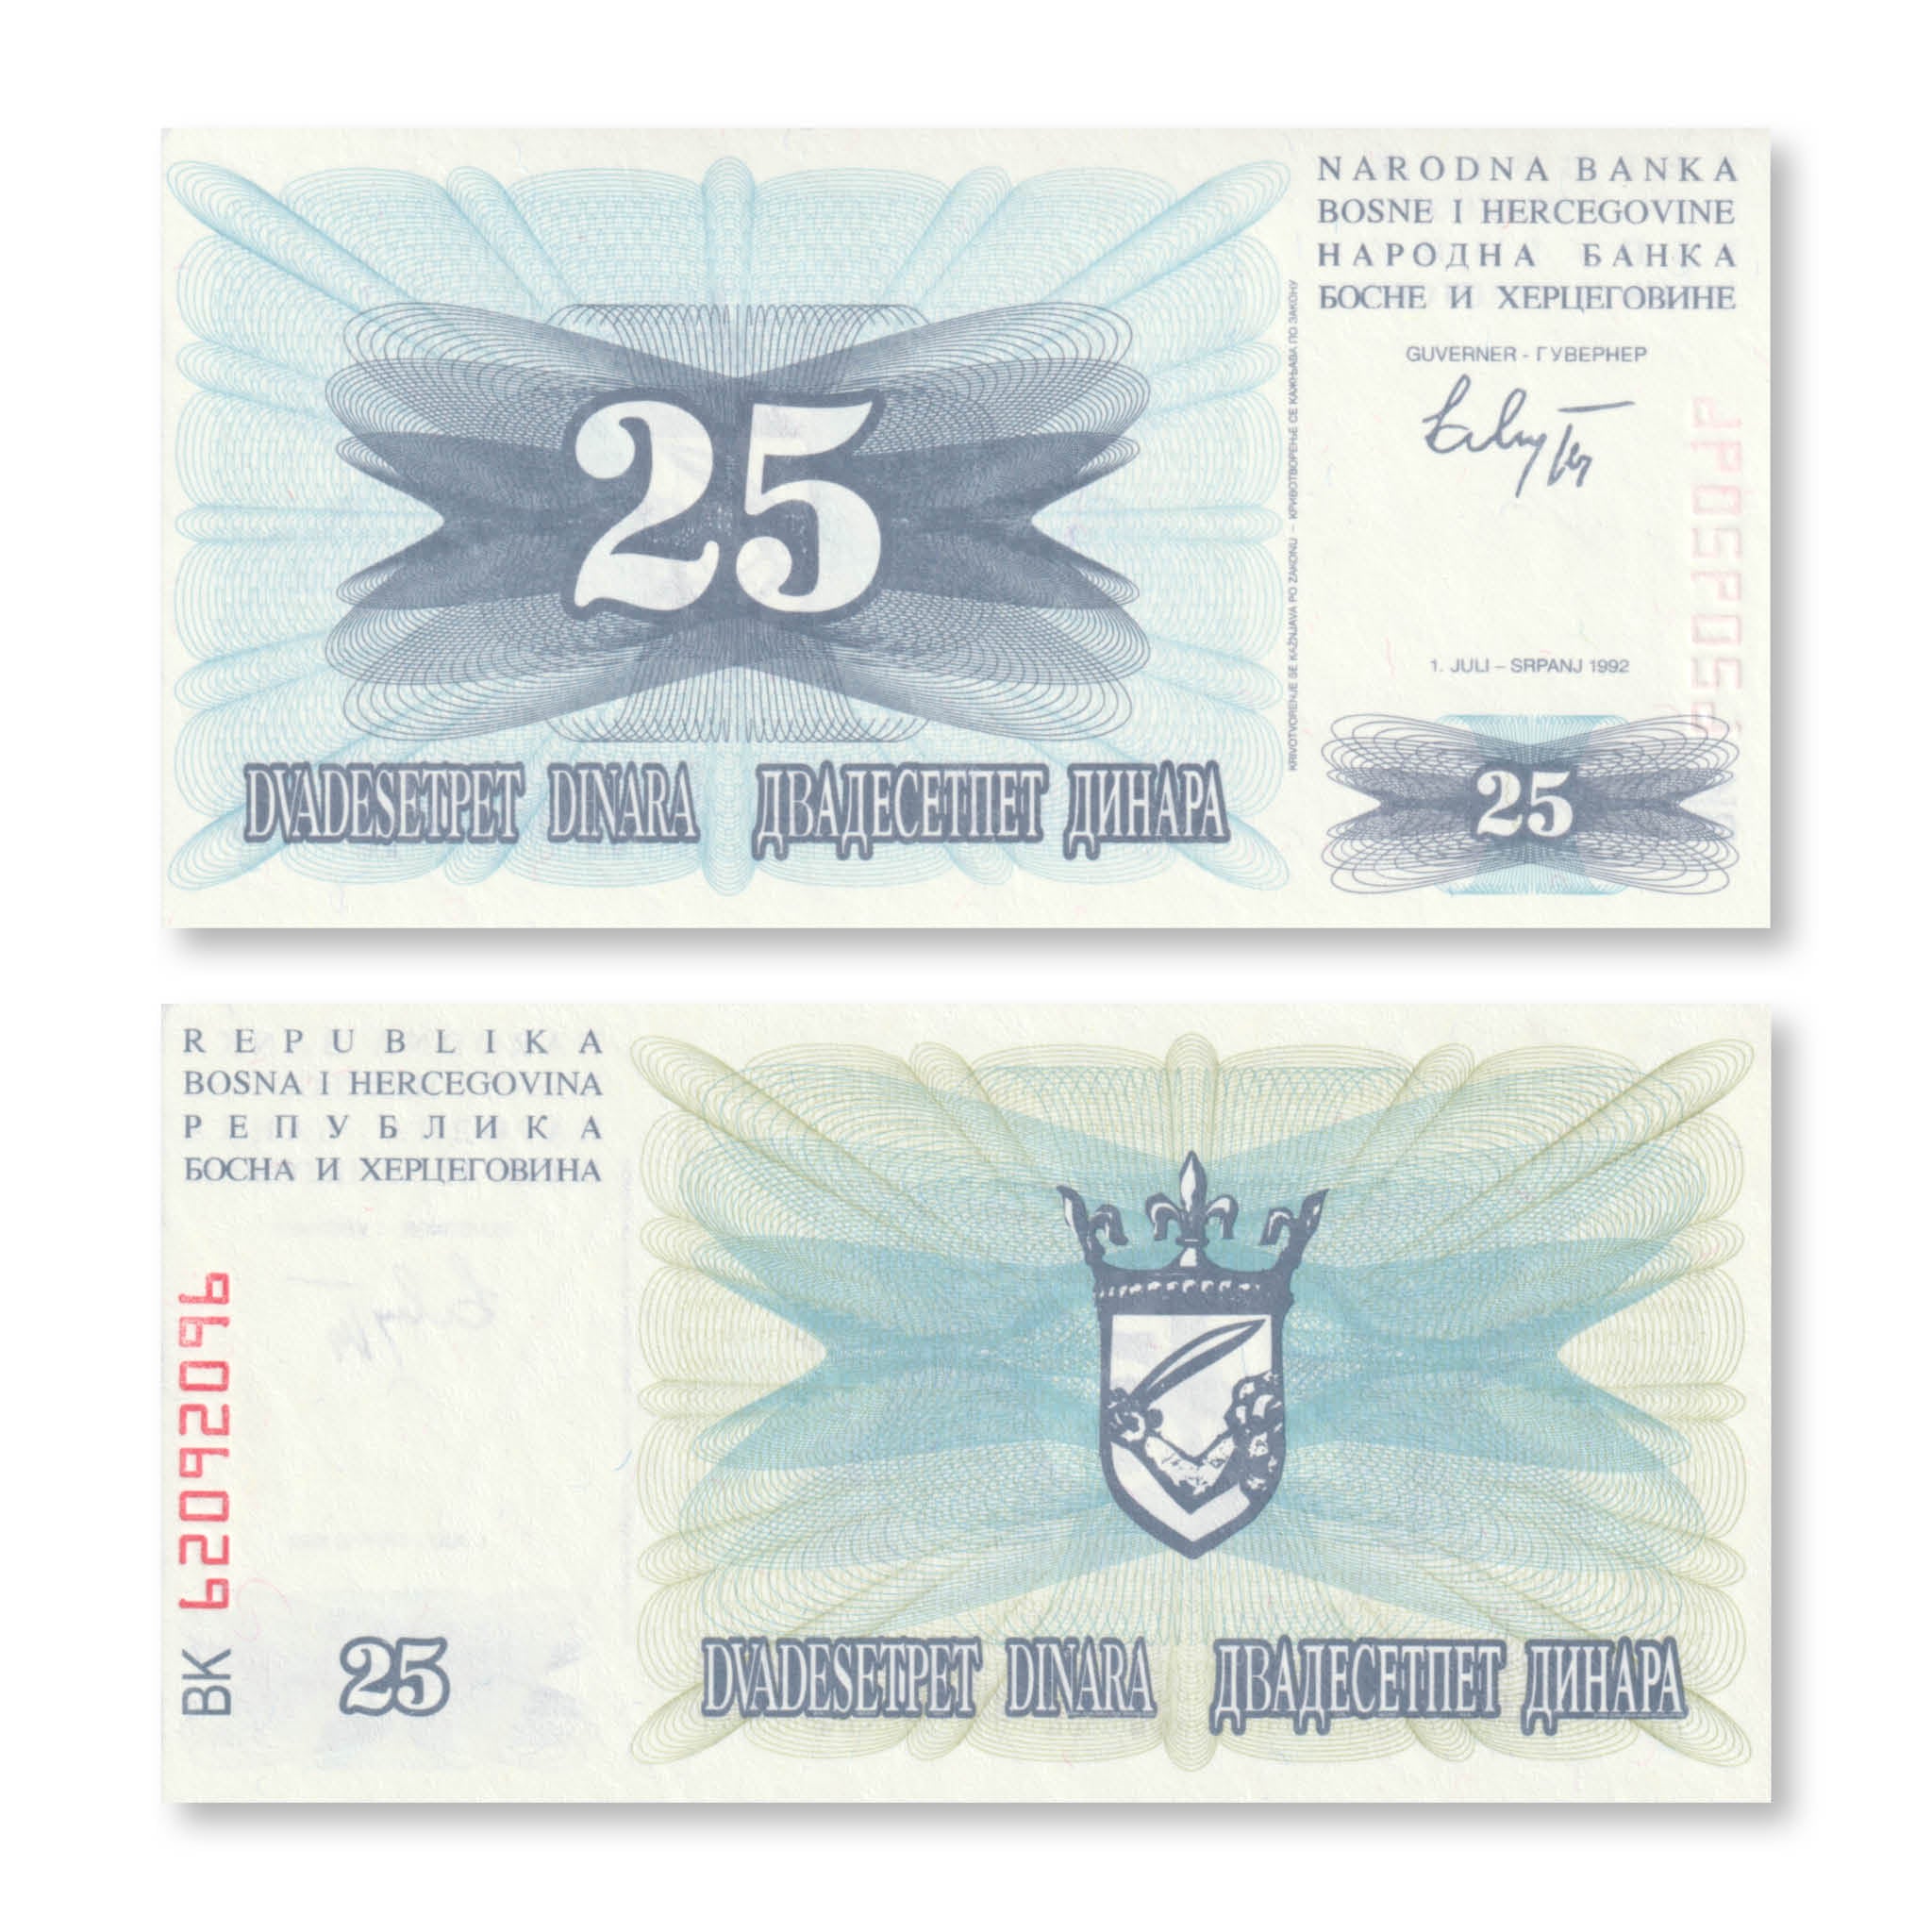 Bosnia 25 Dinars, 1992, B114a, P11a, UNC - Robert's World Money - World Banknotes